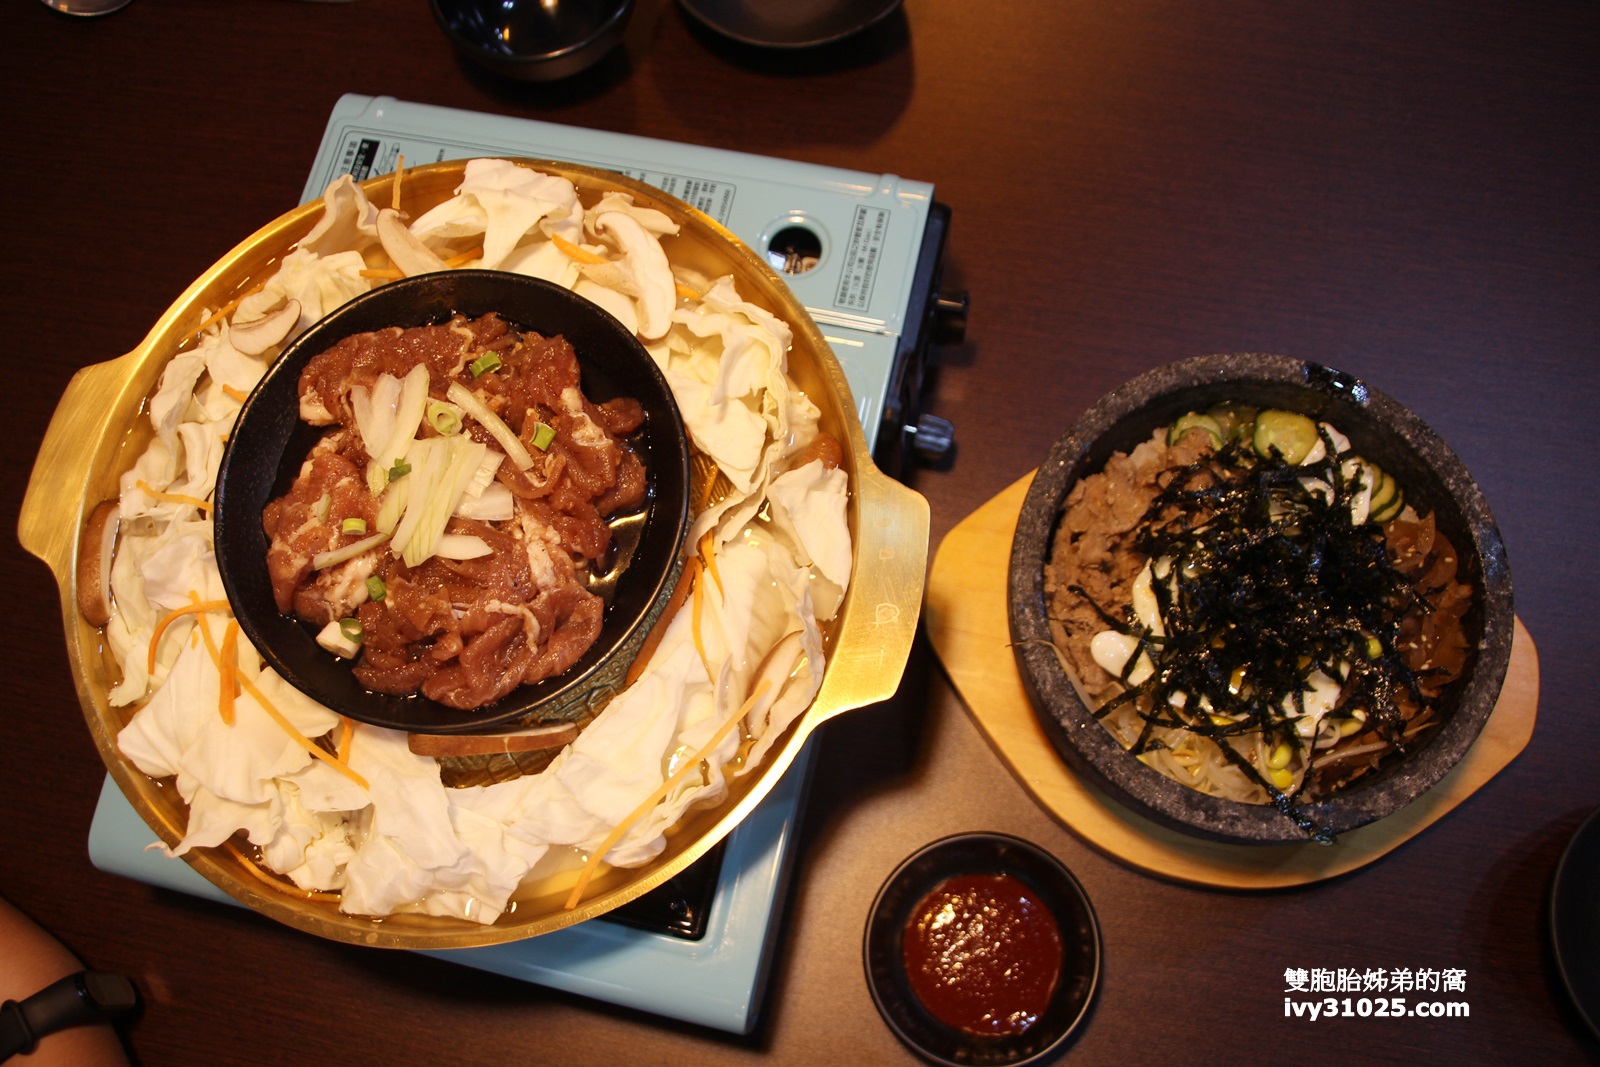 弘焺韓式料理 | 銅盤烤肉 | 泡菜起士辣炒年糕 | 石鍋拌飯 | 部隊鍋 | 高雄美食